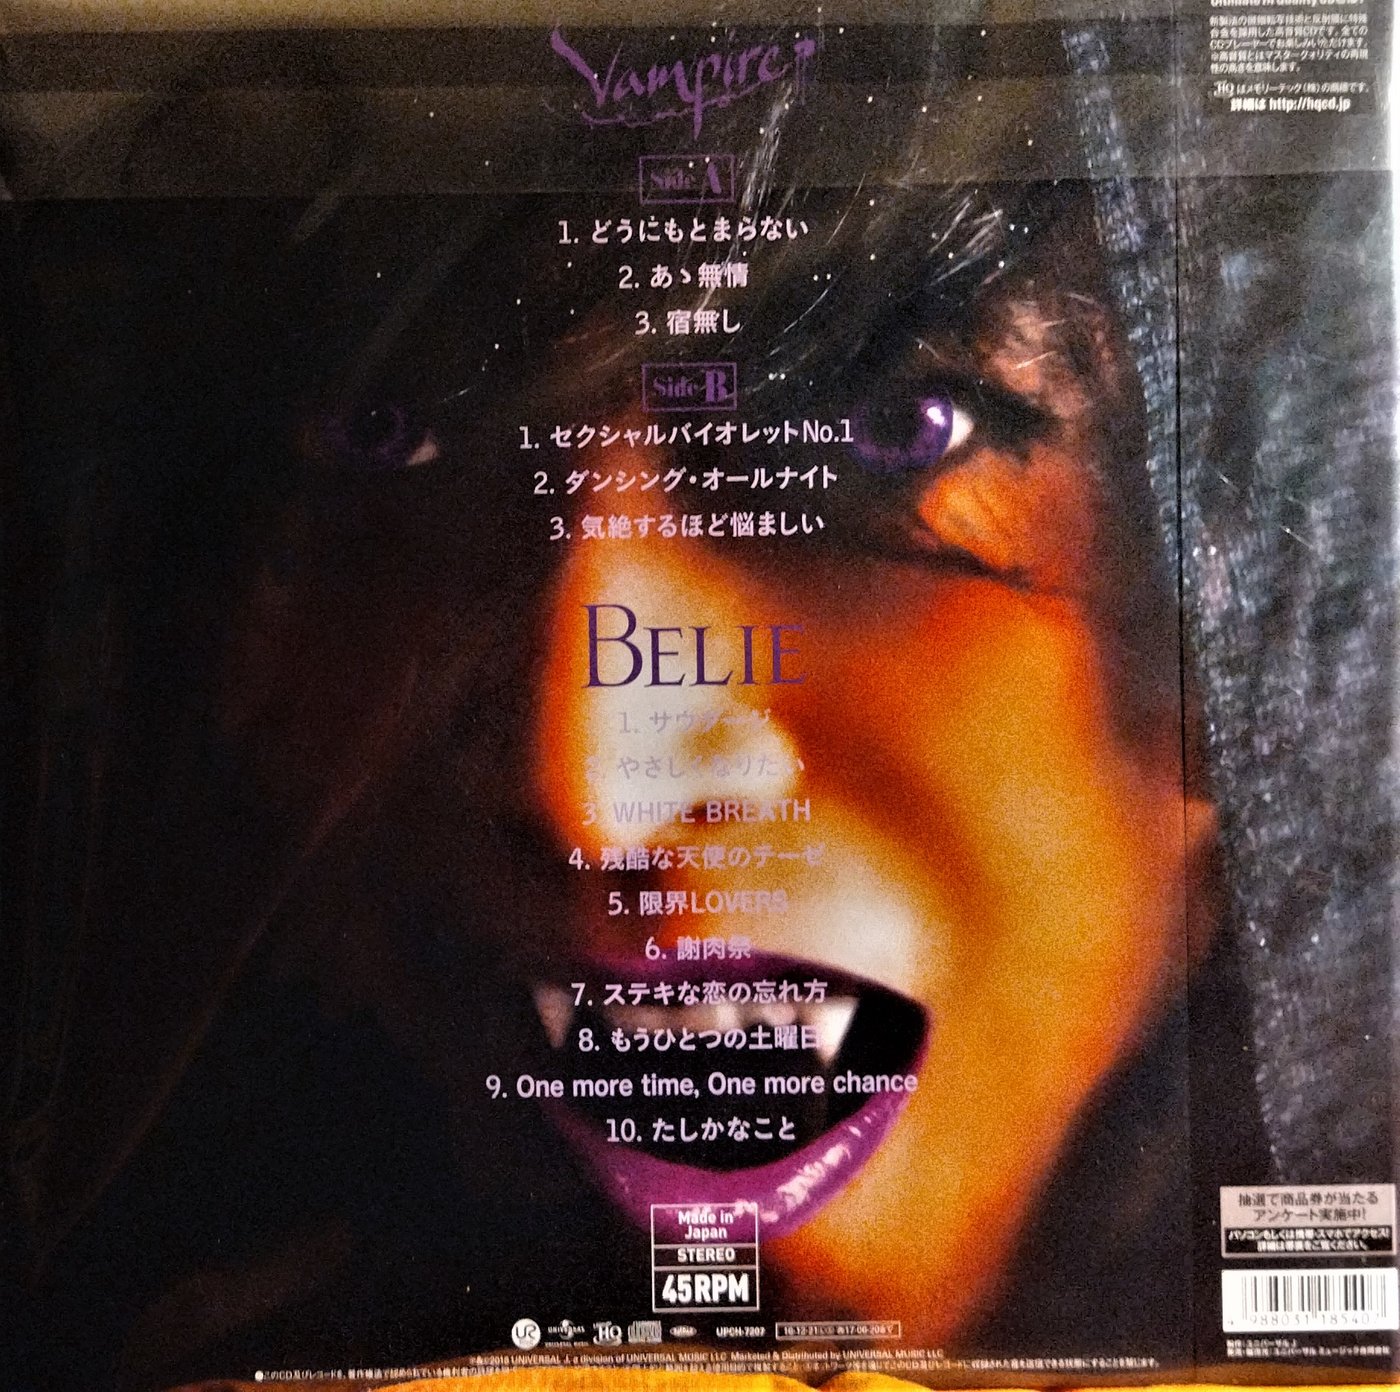 中森明菜「Belie + Vampire」〈クリスマス完全生産限定盤〉 - CD